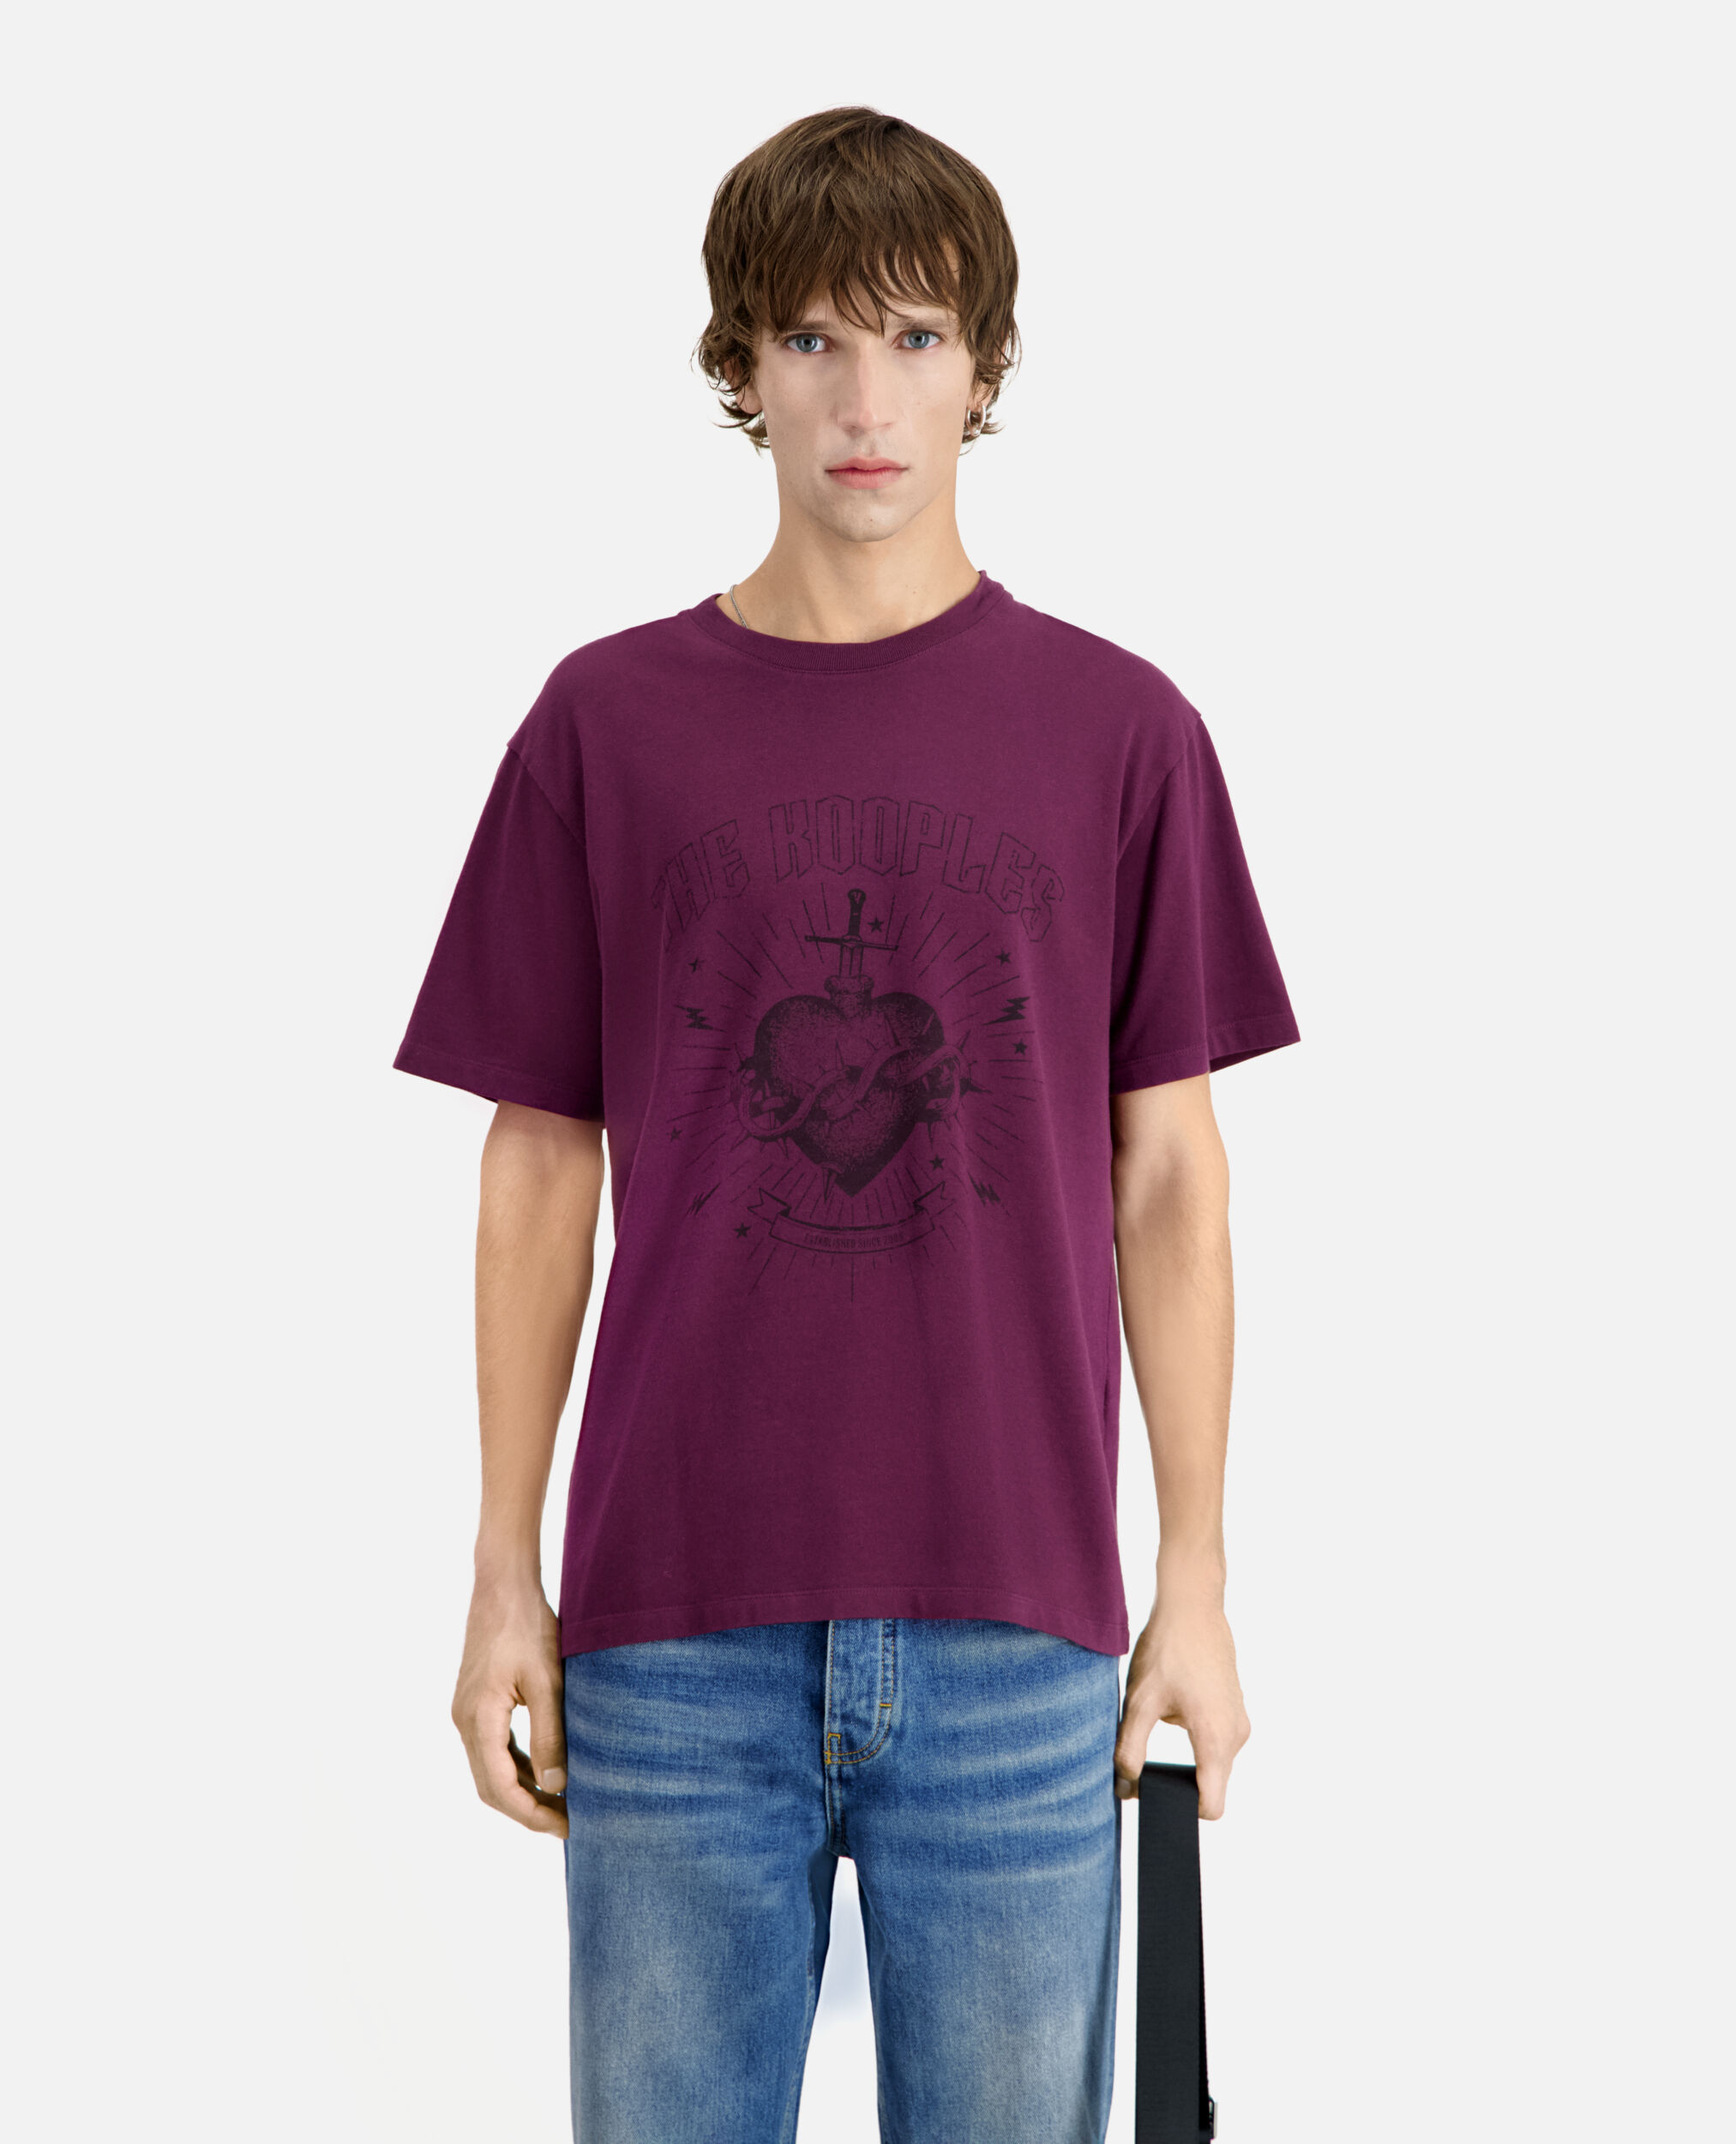 T-shirt Homme bordeaux avec sérigraphie Dagger through heart, BORDEAUX, hi-res image number null